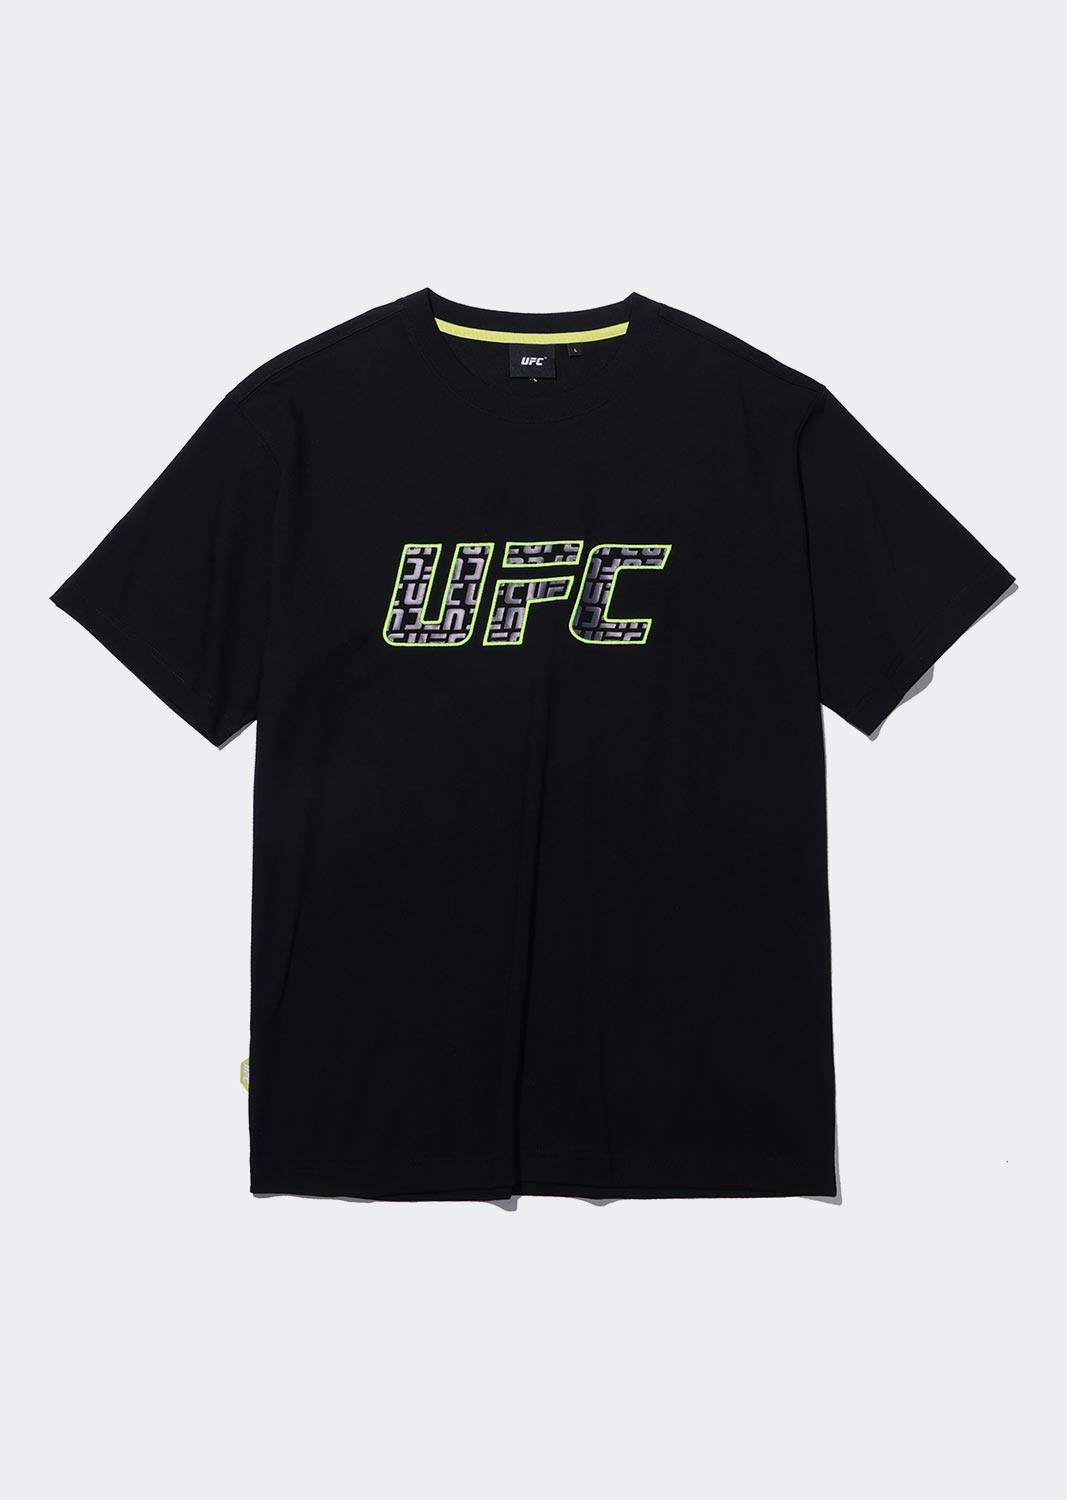 UFC 로고 모노그램 릴렉스핏 반팔 티셔츠  블랙 U2SSU2309BK